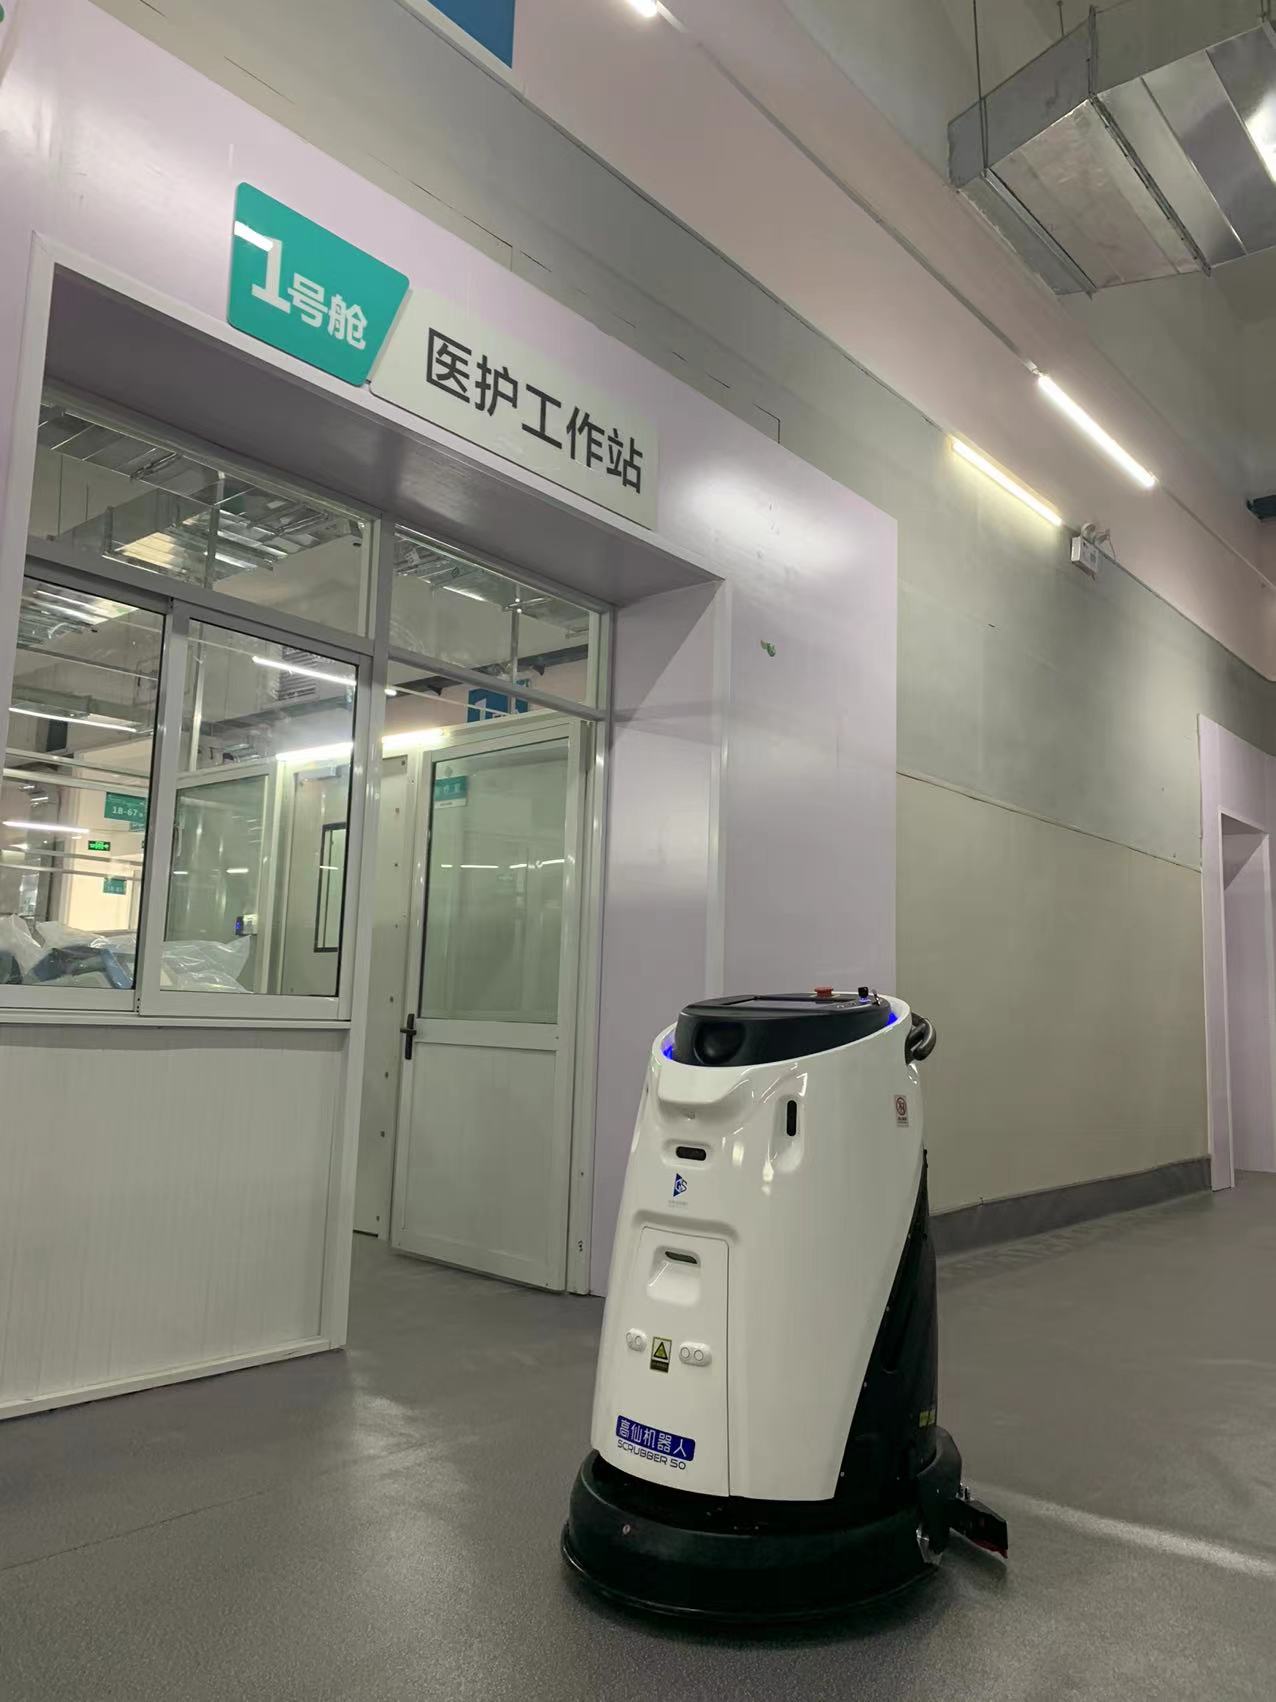 抗疫前线丨高仙清洁消杀机器人落地扬州、湖州、长沙多个方舱医院